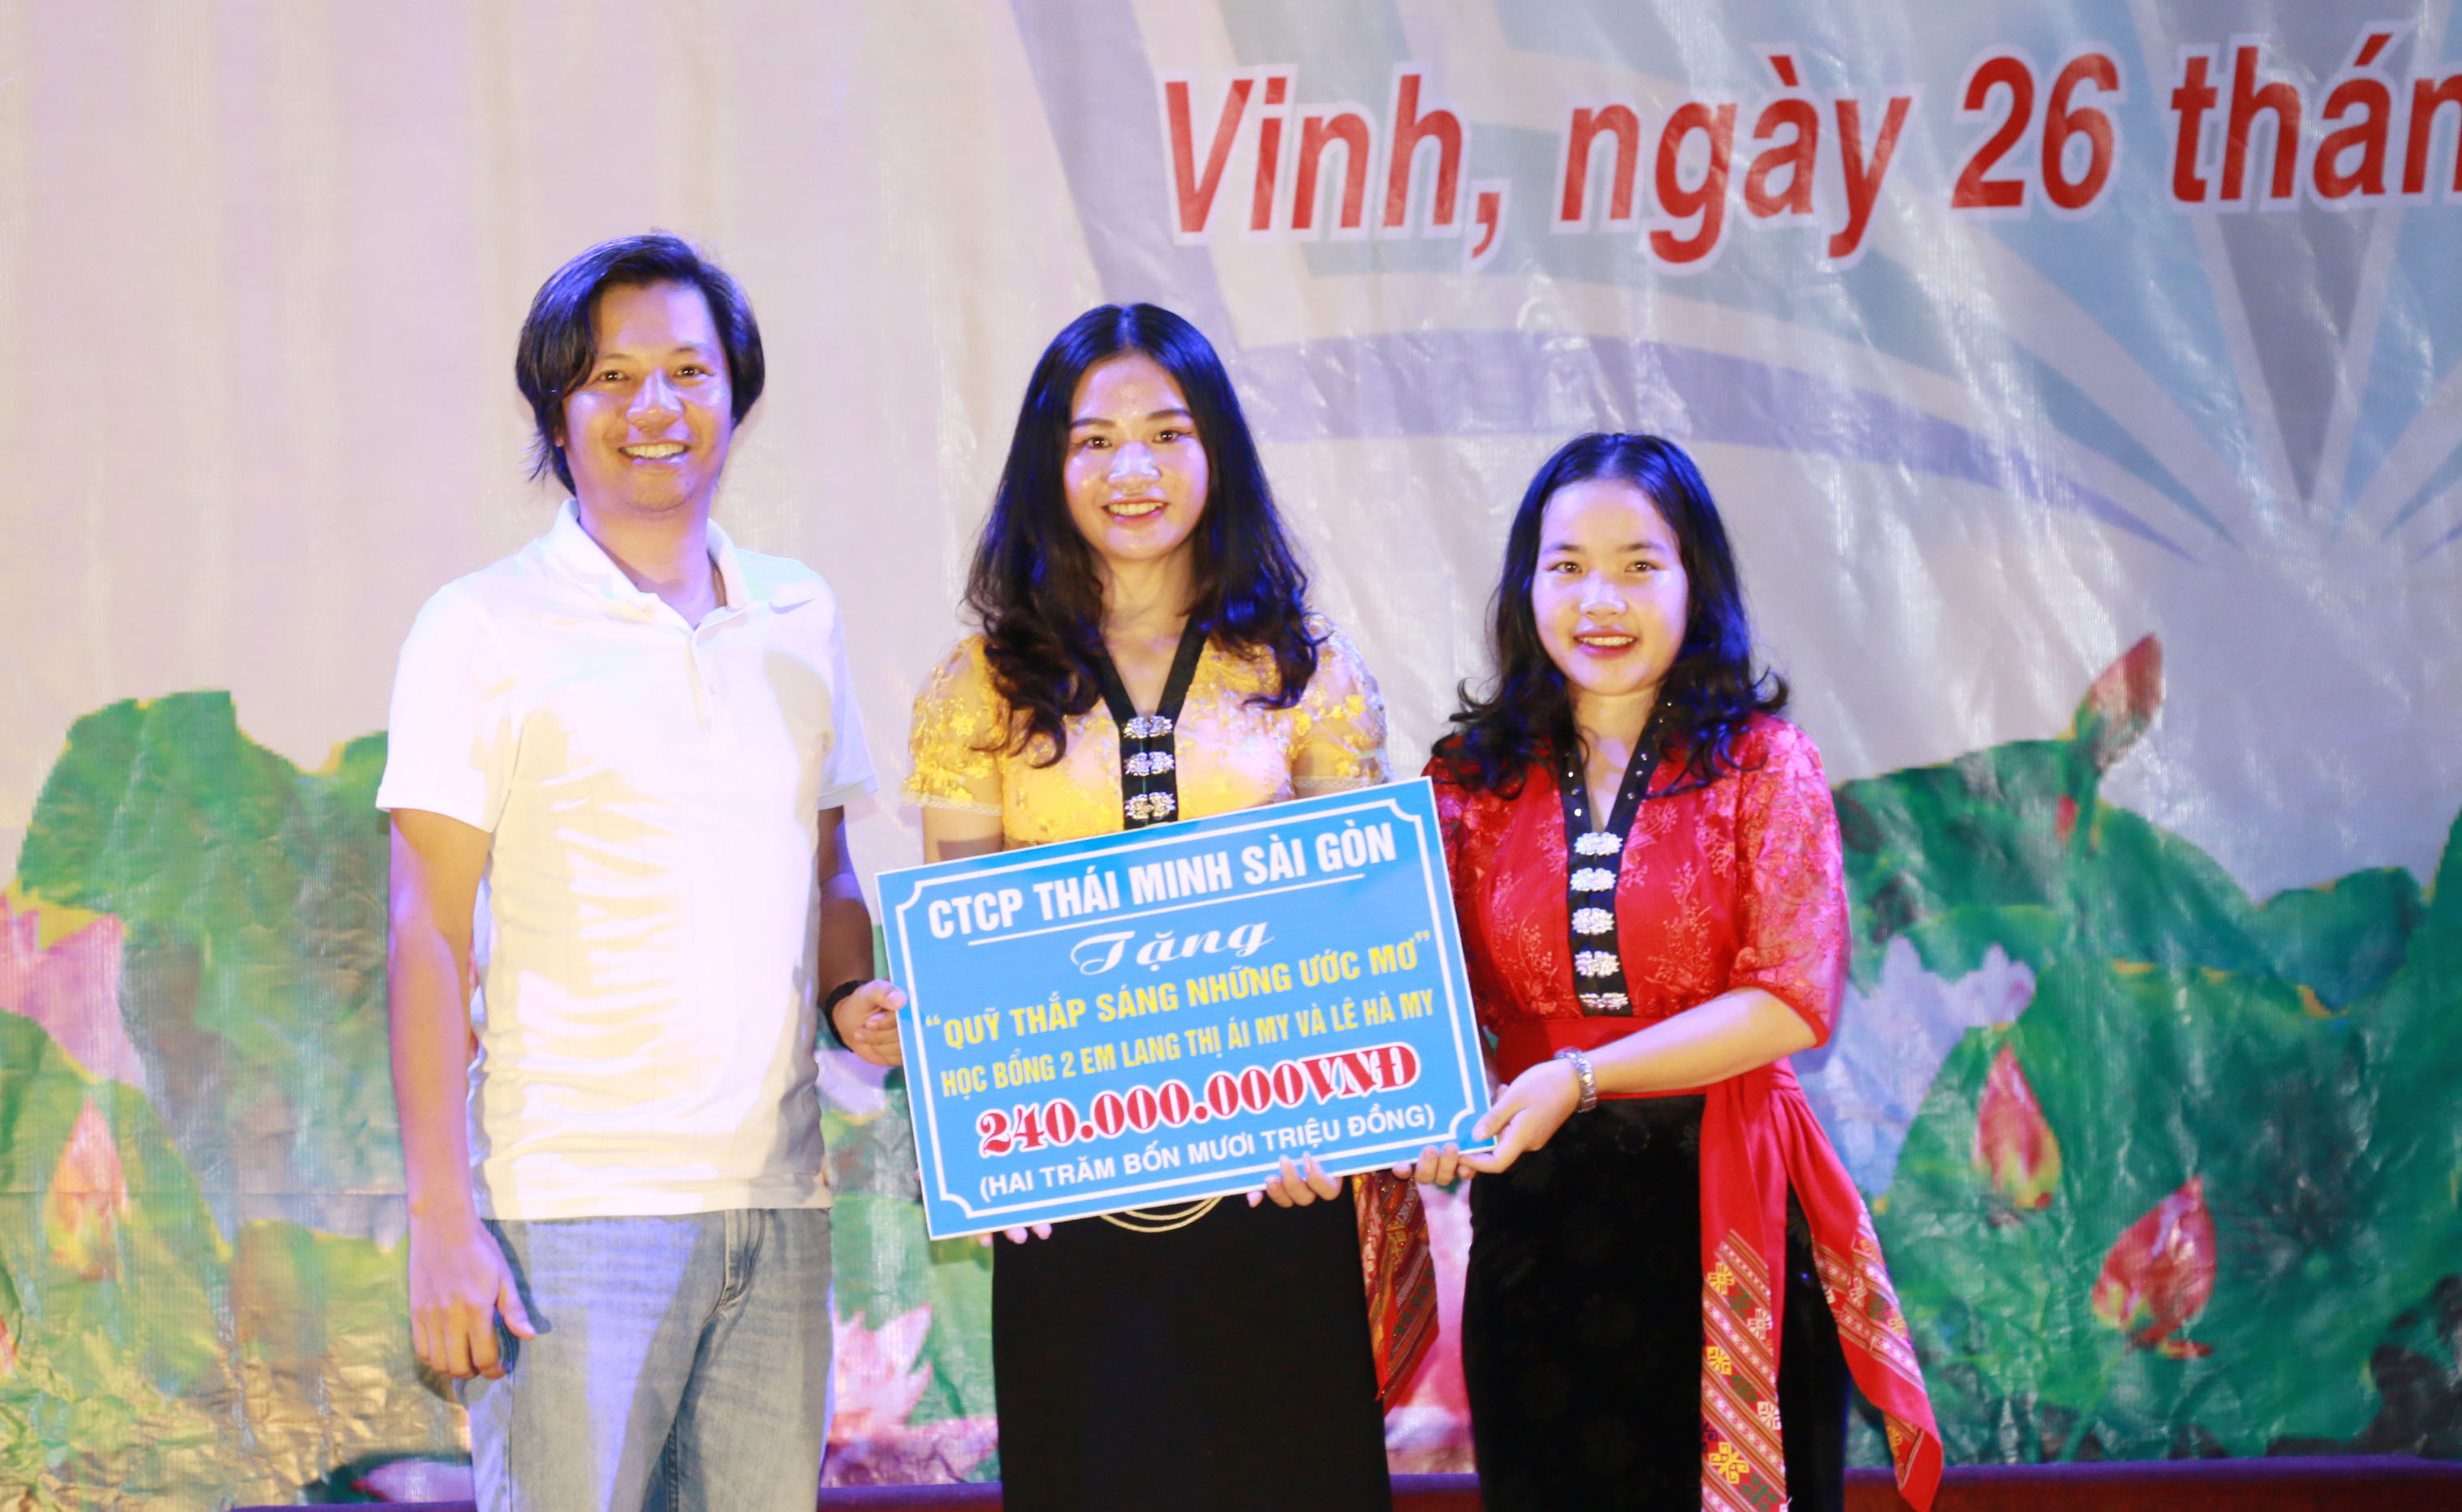 Đại diện Công ty Thái Minh Sài Gòn trao học bổng với tổng giá trị 240 triệu đồng cho 2 học sinh đạt điểm cao nhất của nhà trường 2. Ảnh: Mỹ Hà.